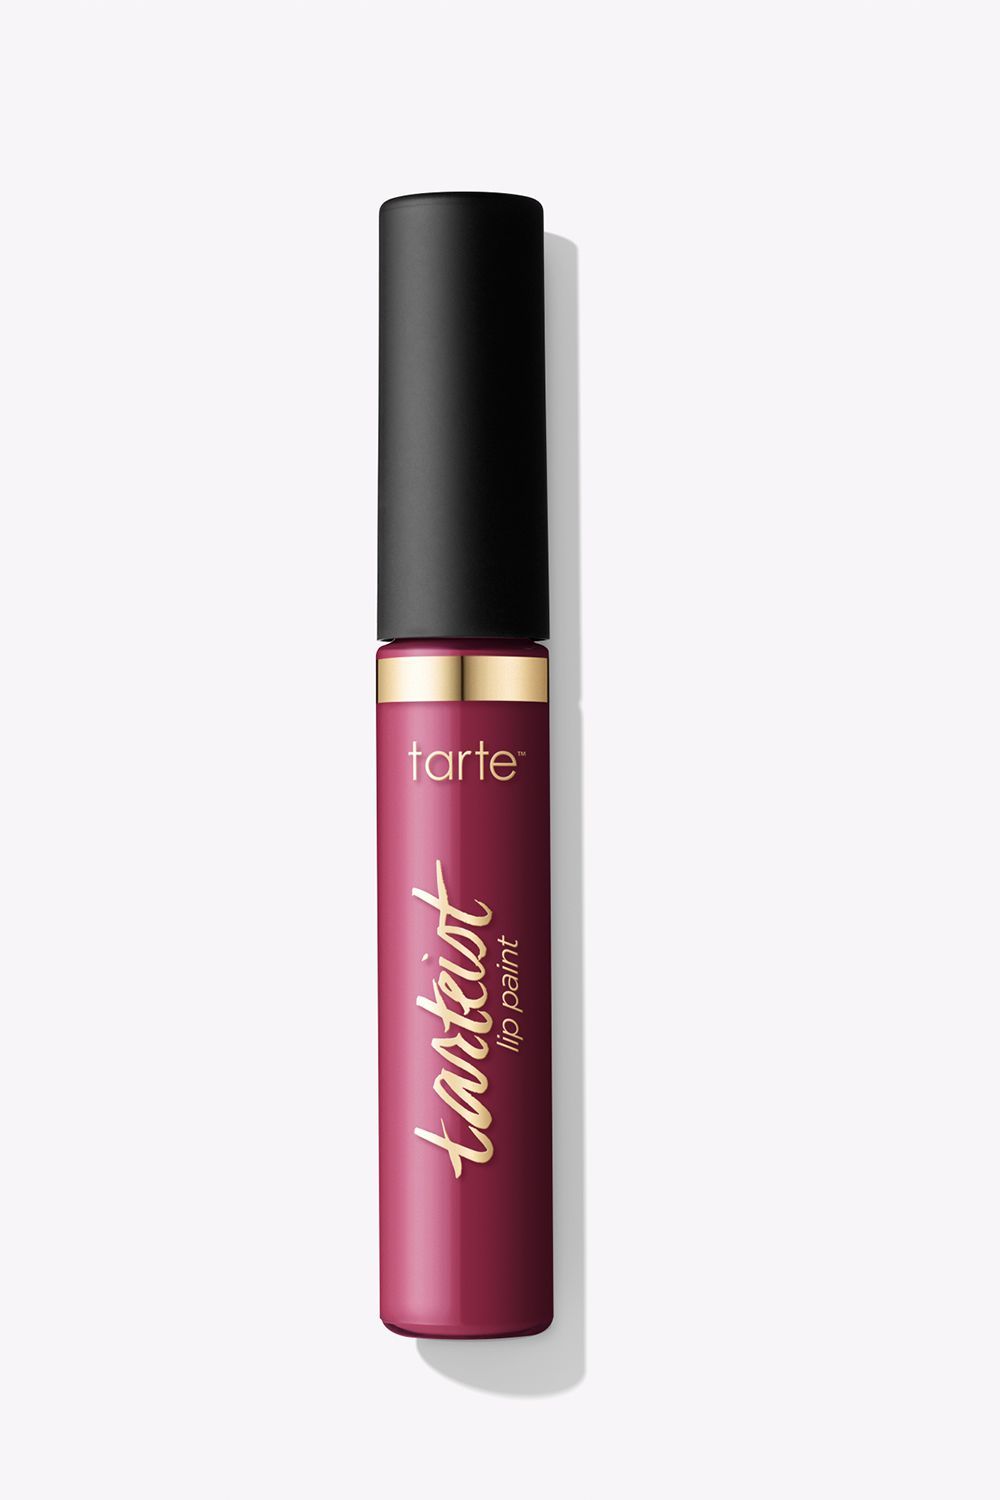 Augment deeltje jury 12 Waterproof Lipsticks That We Swear By - Best Long-Lasting Lipsticks to  Try